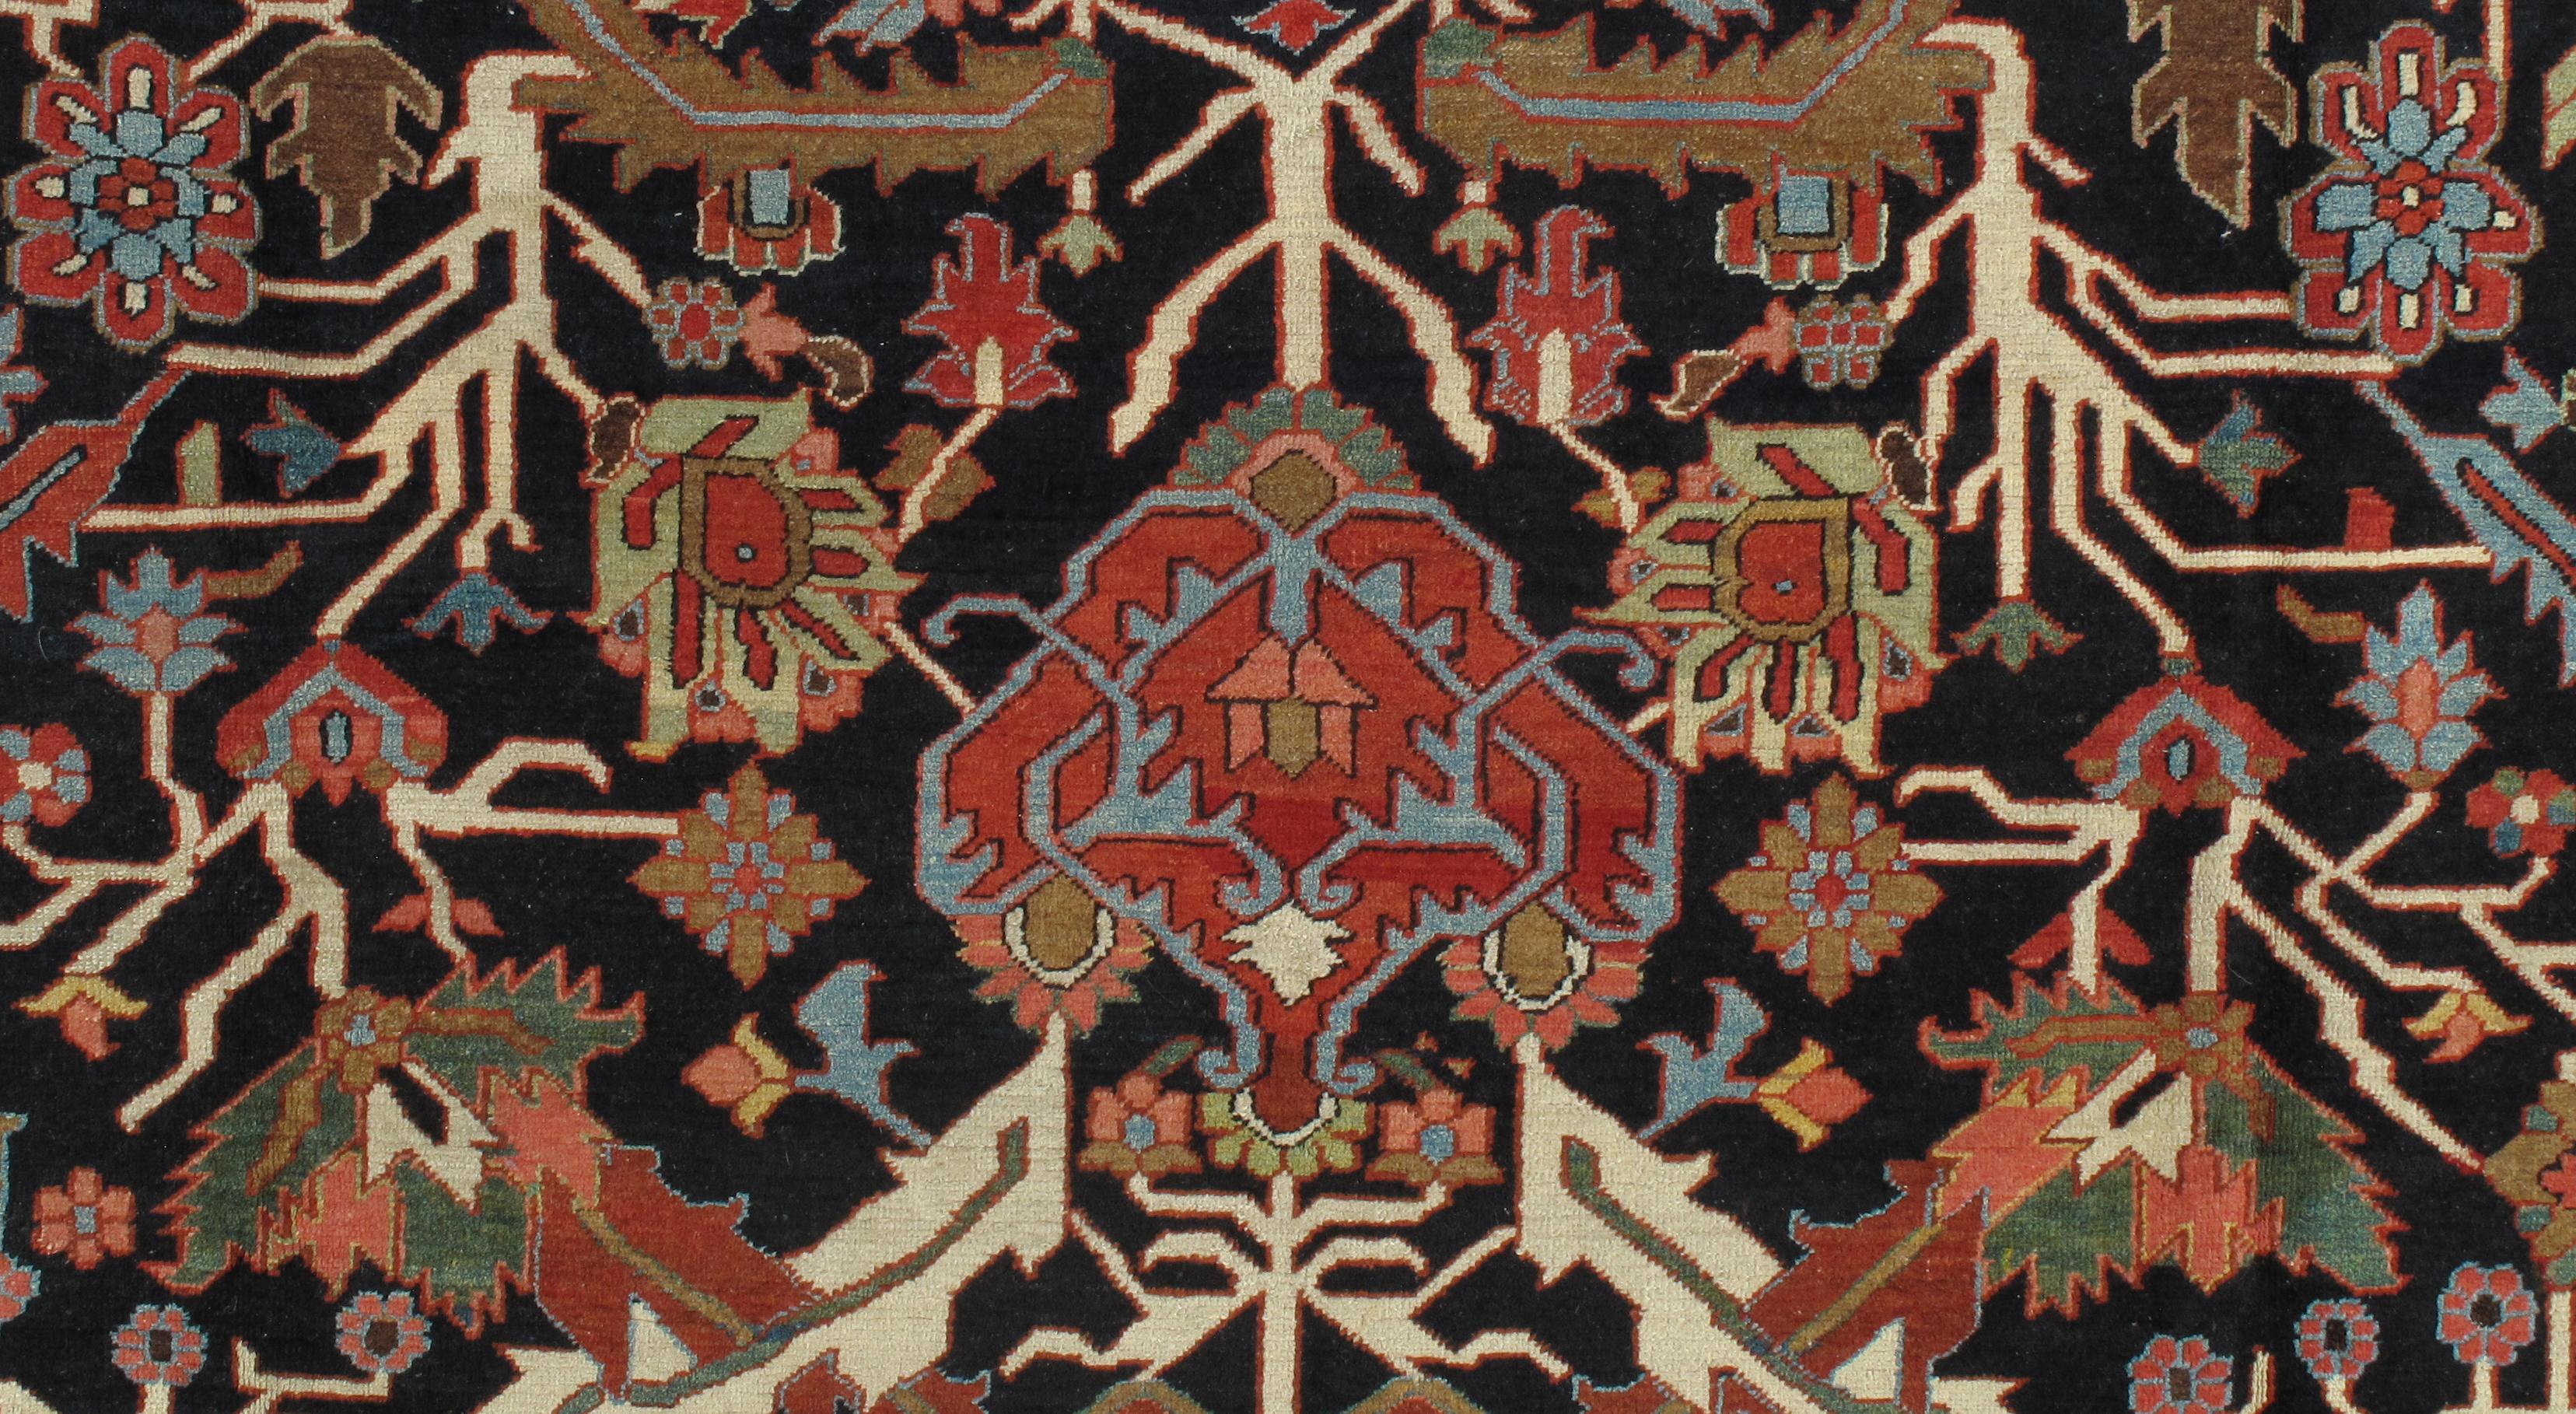 Die Teppiche von Heriz sind der Grundbestandteil des Möbelmarktes und nach wie vor die beliebtesten aller persischen Teppiche im NW-Stil. Sie wurden für den schnell wachsenden US-Markt Ende des 19. bis Anfang des 20. Jahrhunderts hergestellt. Die